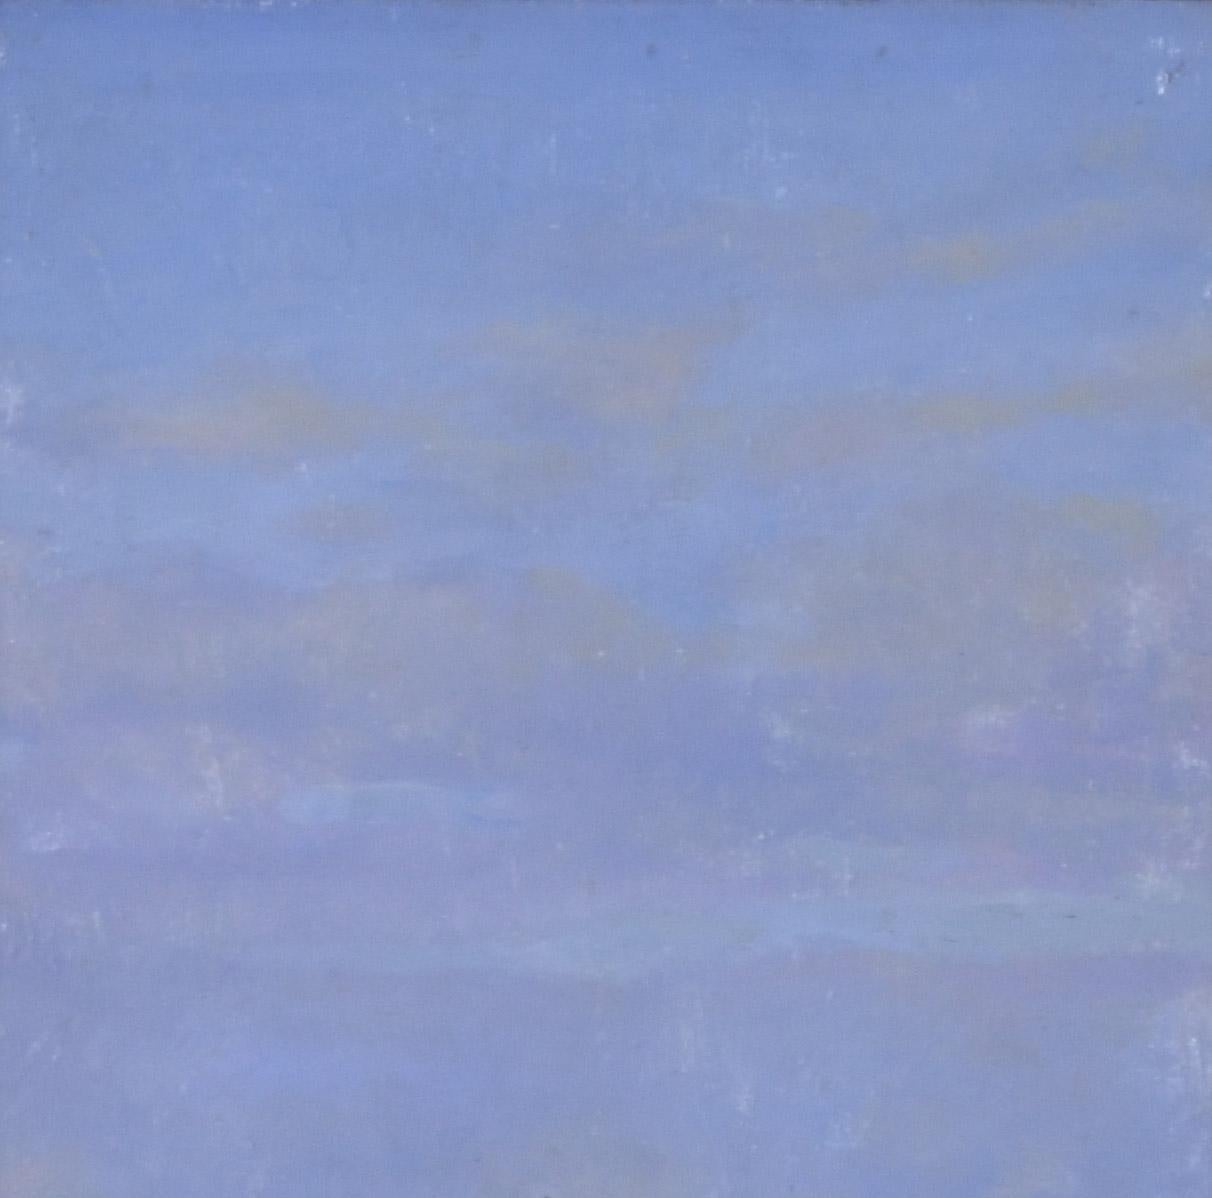 Das ruhige Meer – Painting von Ernest Haskell